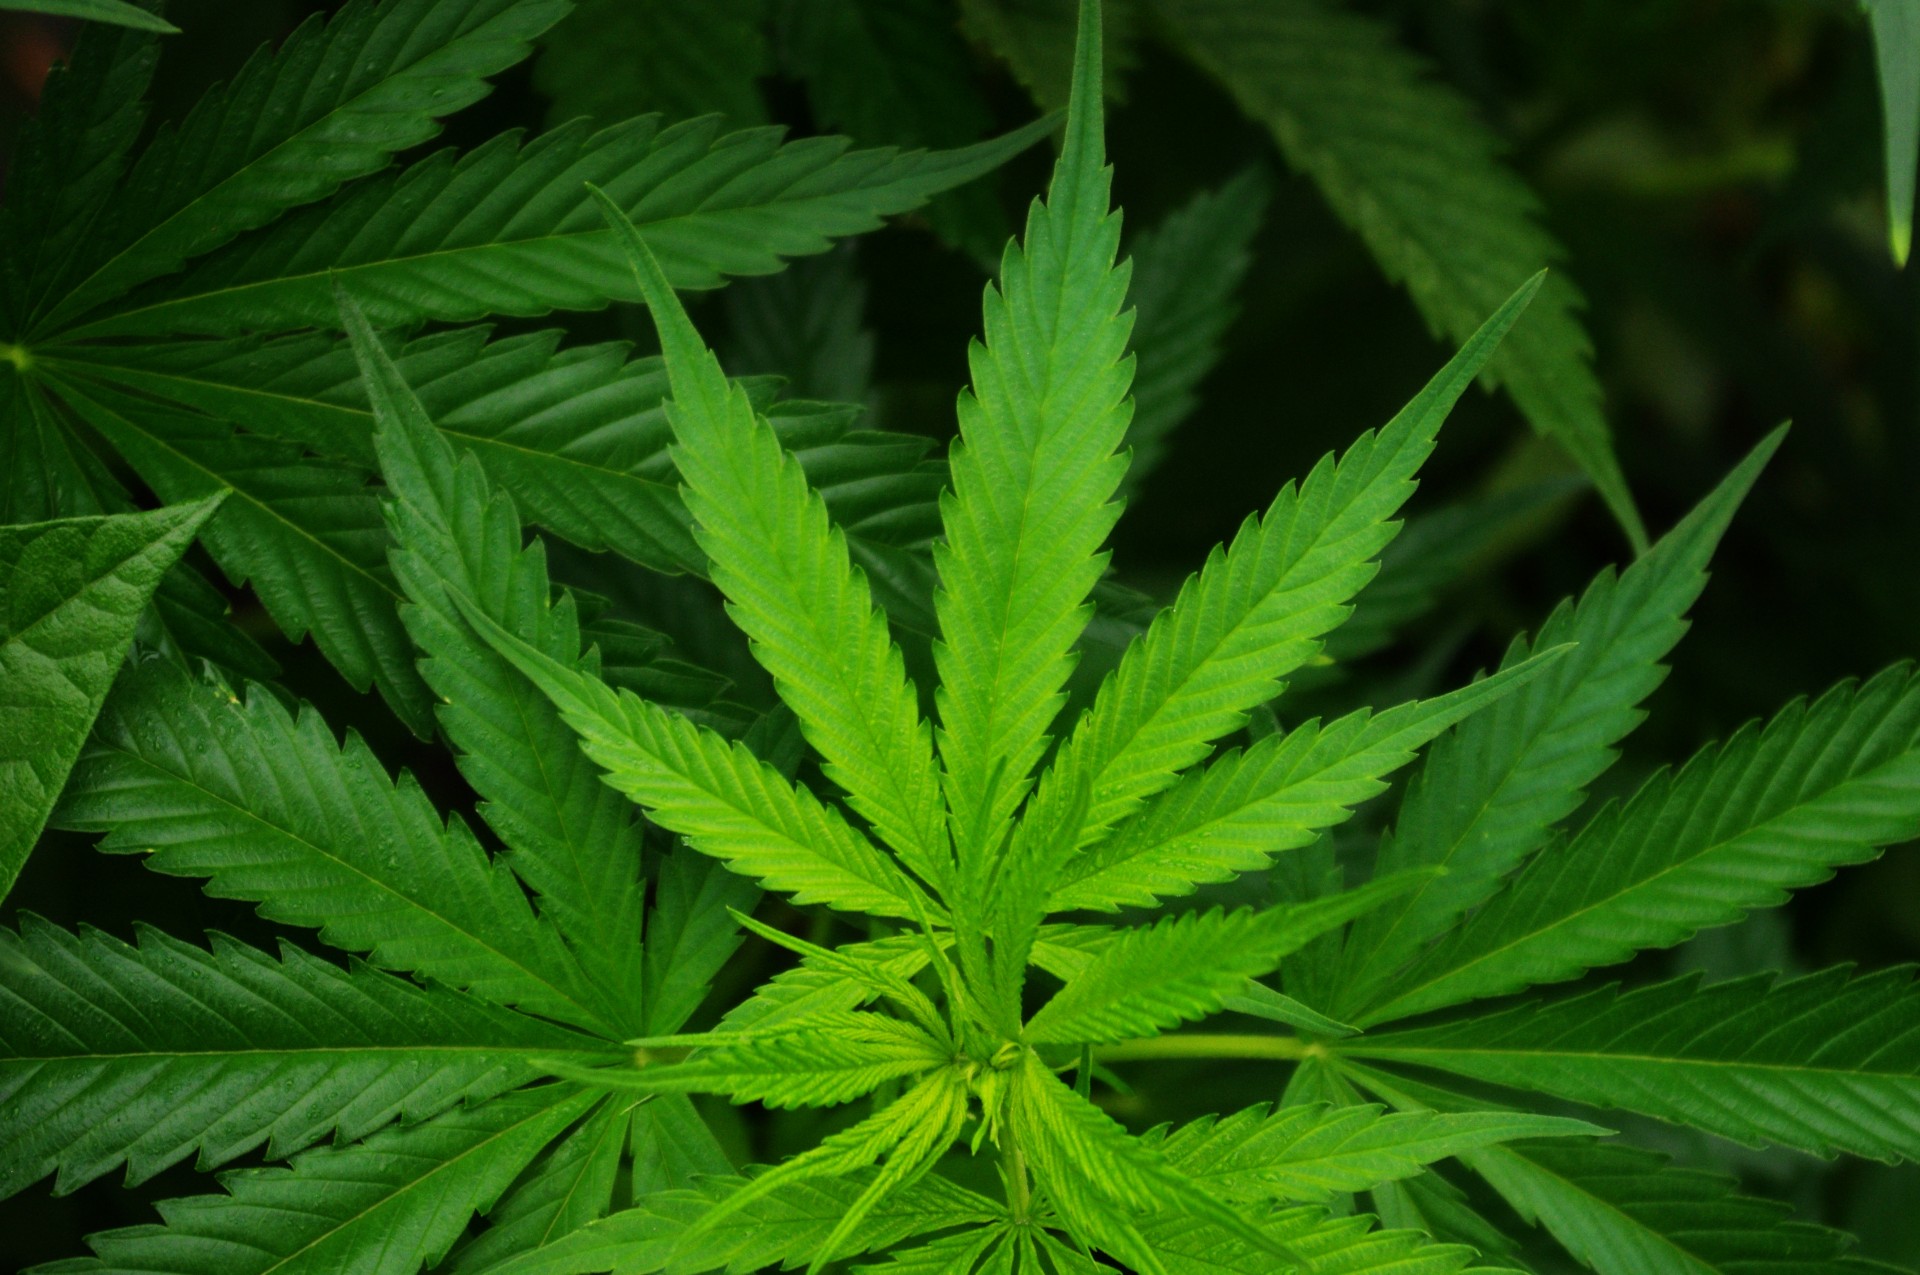 Section 8 of the Michigan Medical Marijuana Act